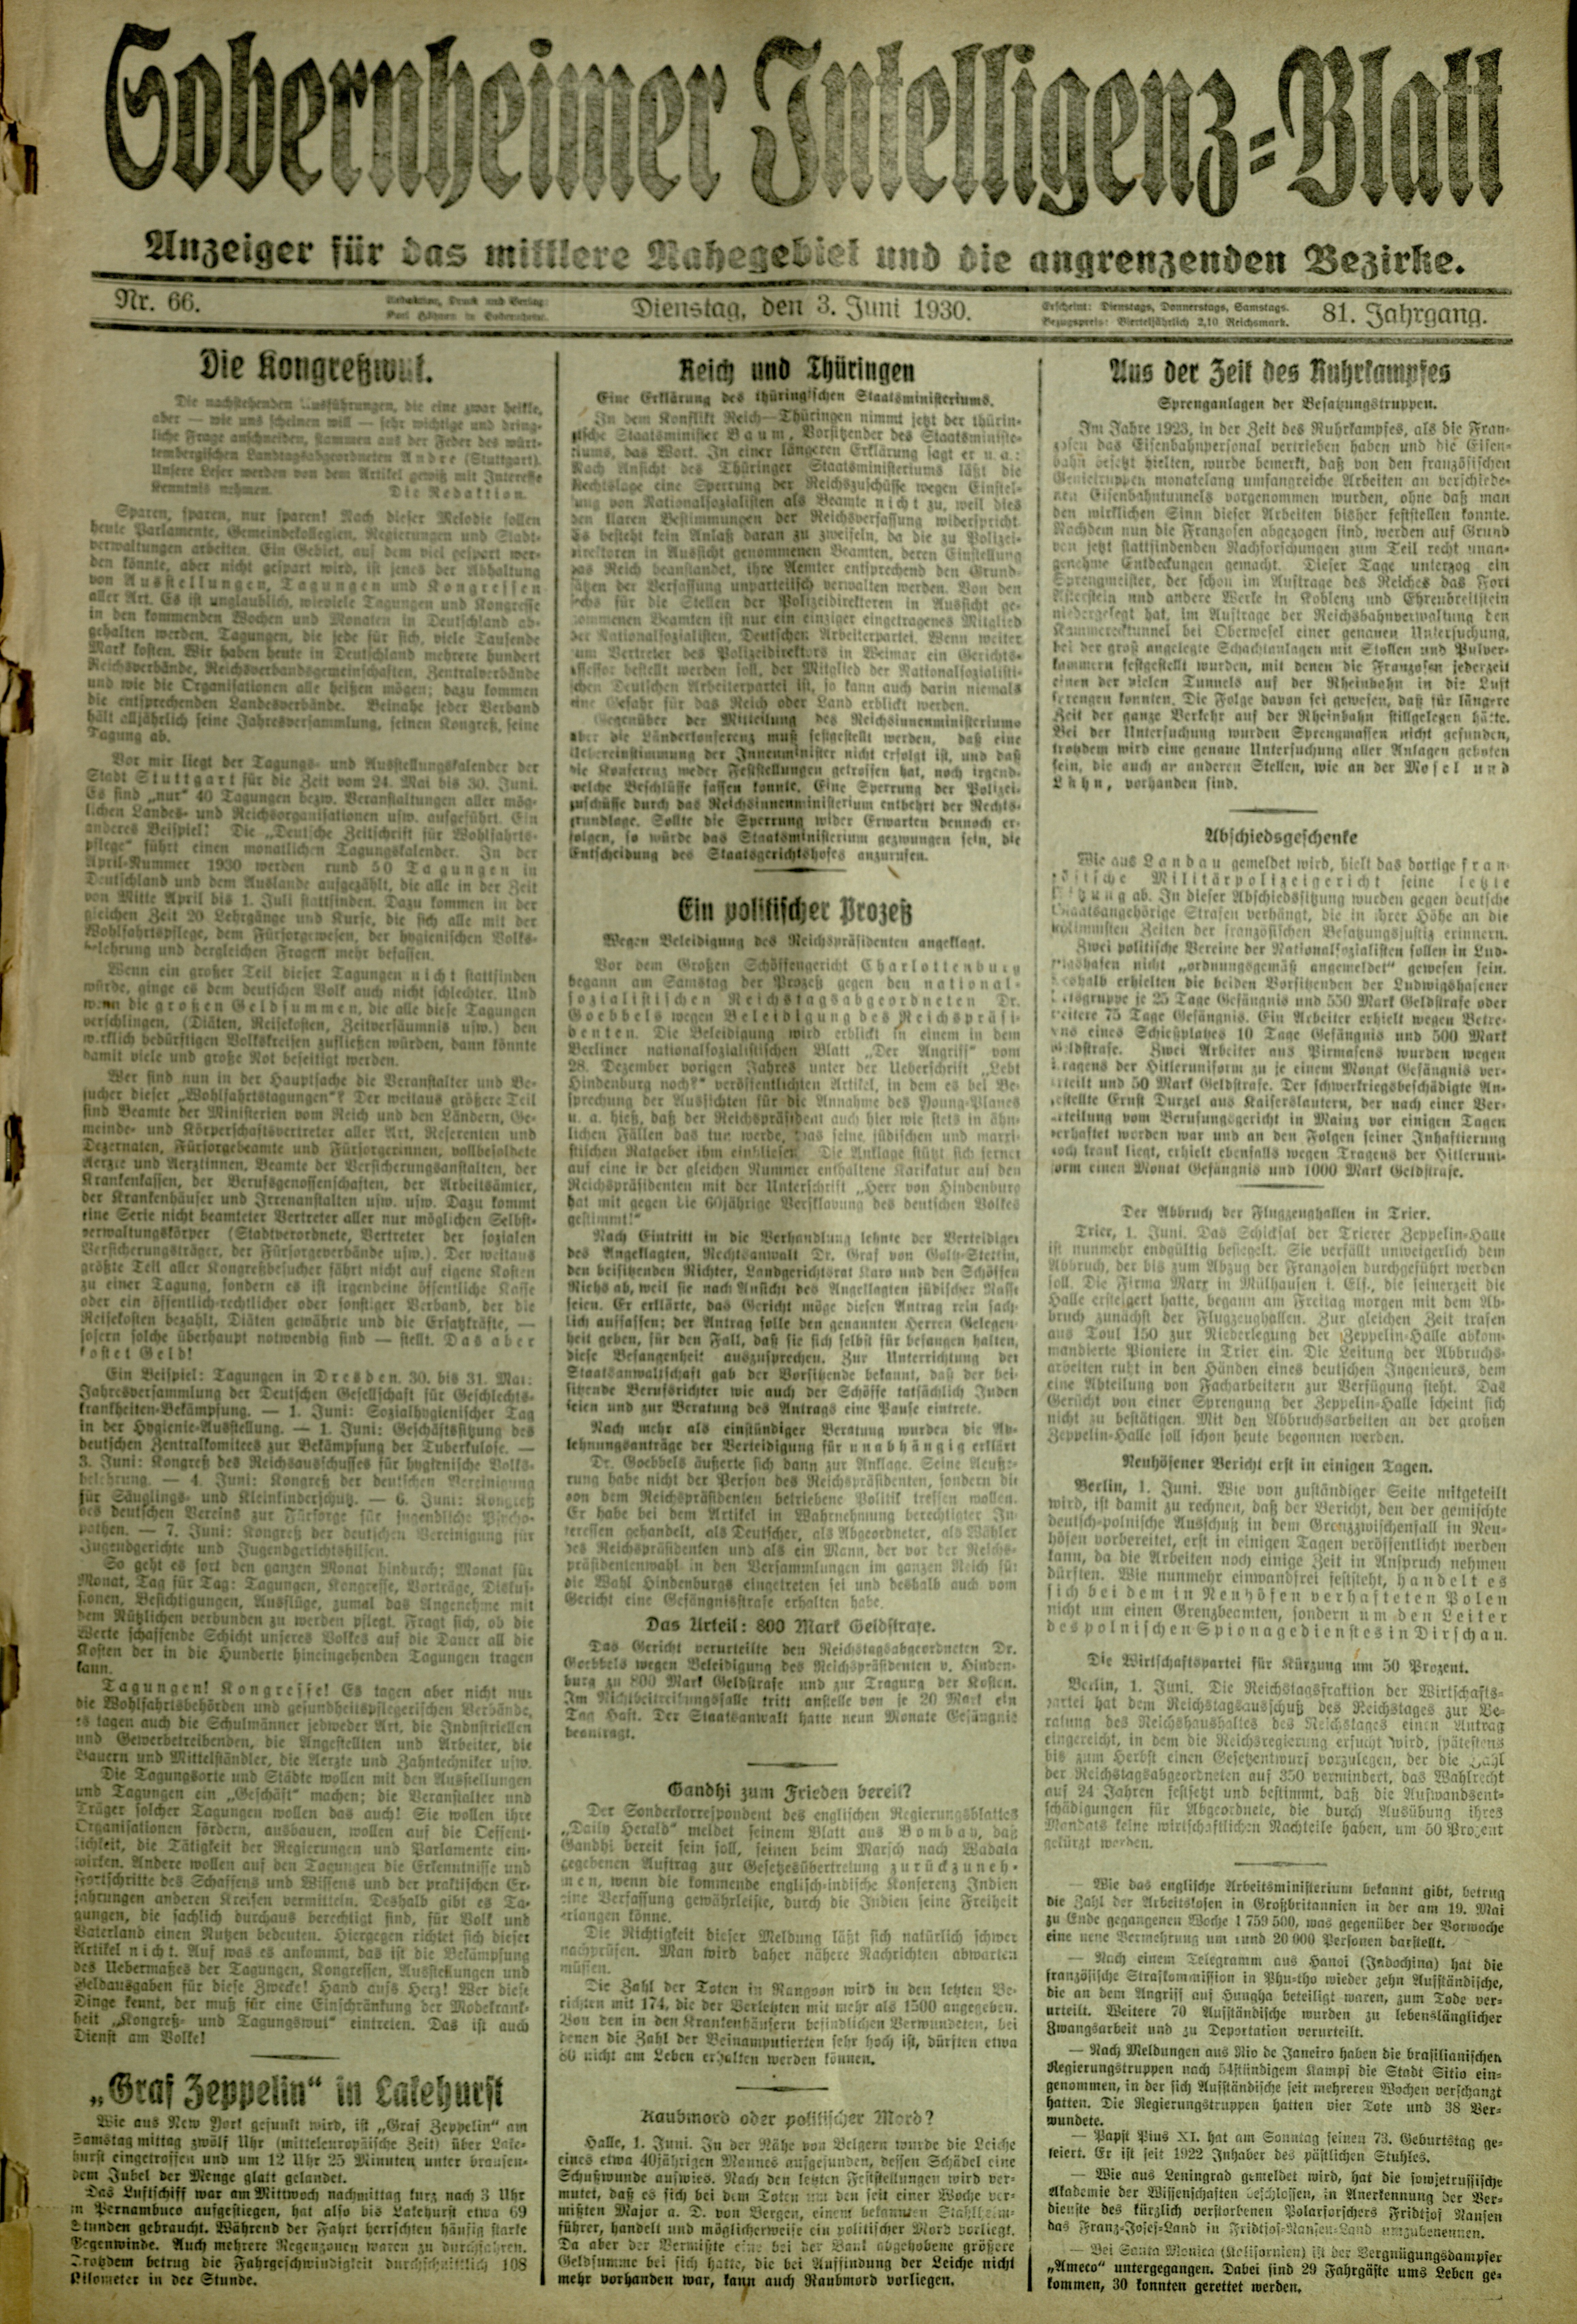 Zeitung: Sobernheimer Intelligenzblatt; Juni 1930, Jg. 81 Nr. 66 (Heimatmuseum Bad Sobernheim CC BY-NC-SA)